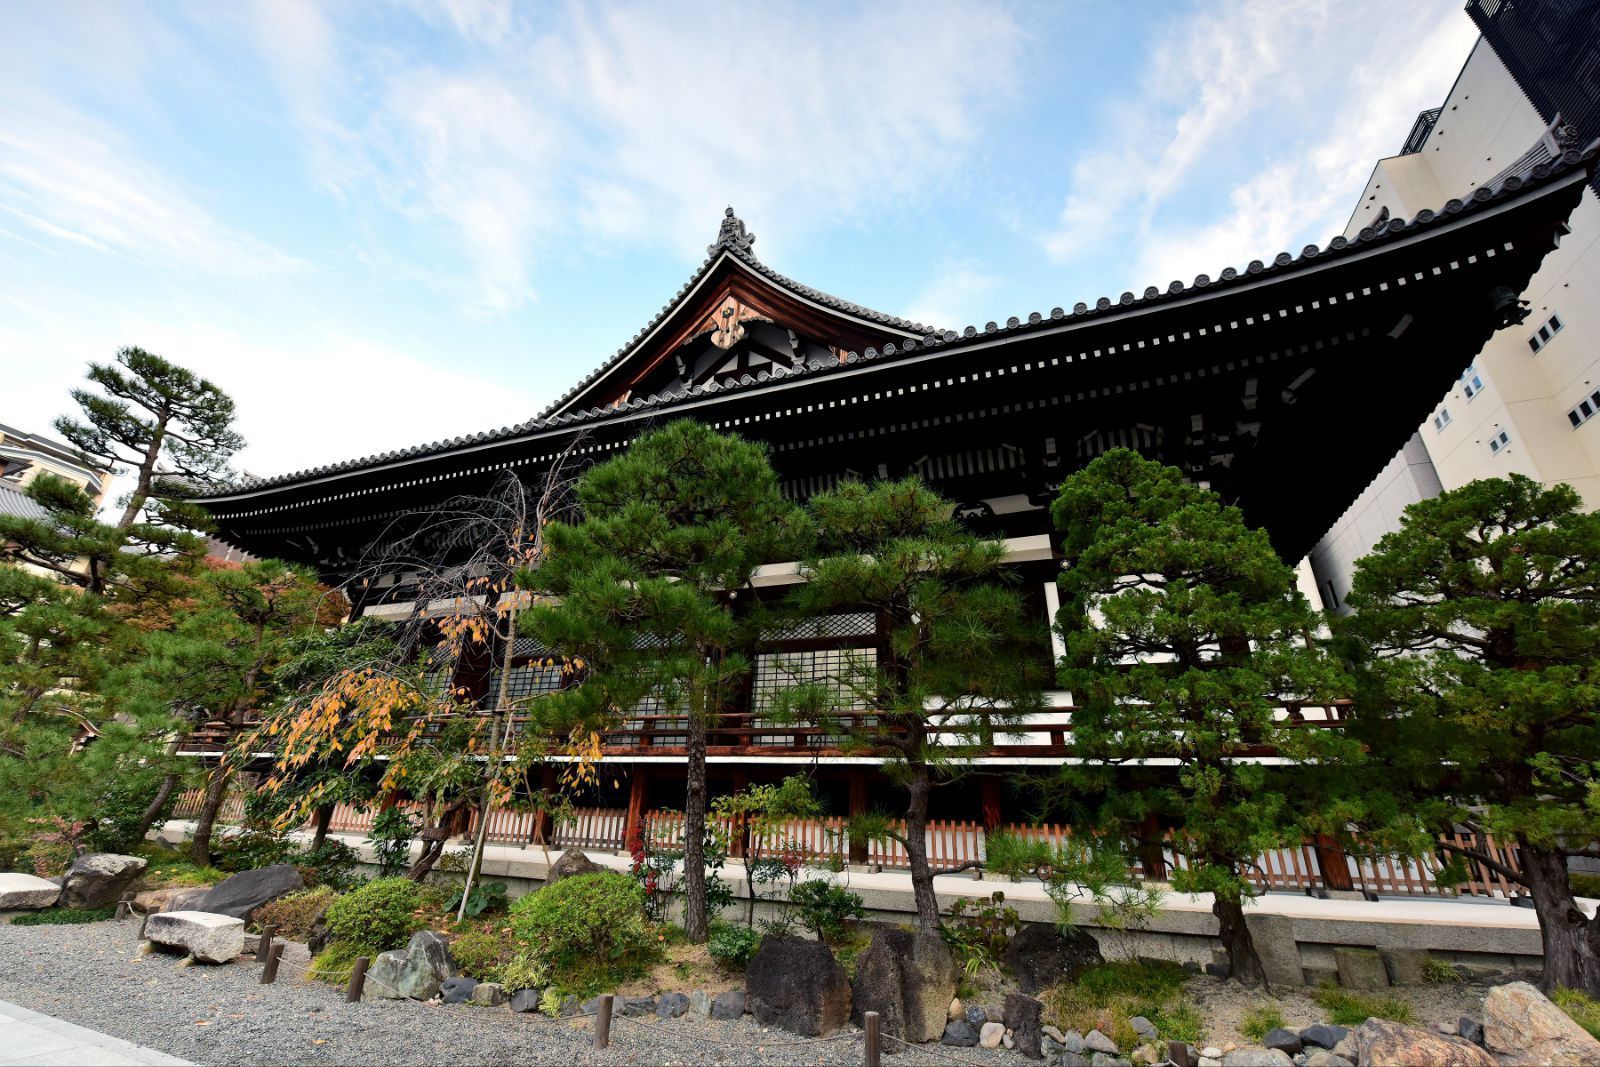 【携程攻略】京都本能寺景点,日本历史上有着这么牛逼意义的本能寺啊